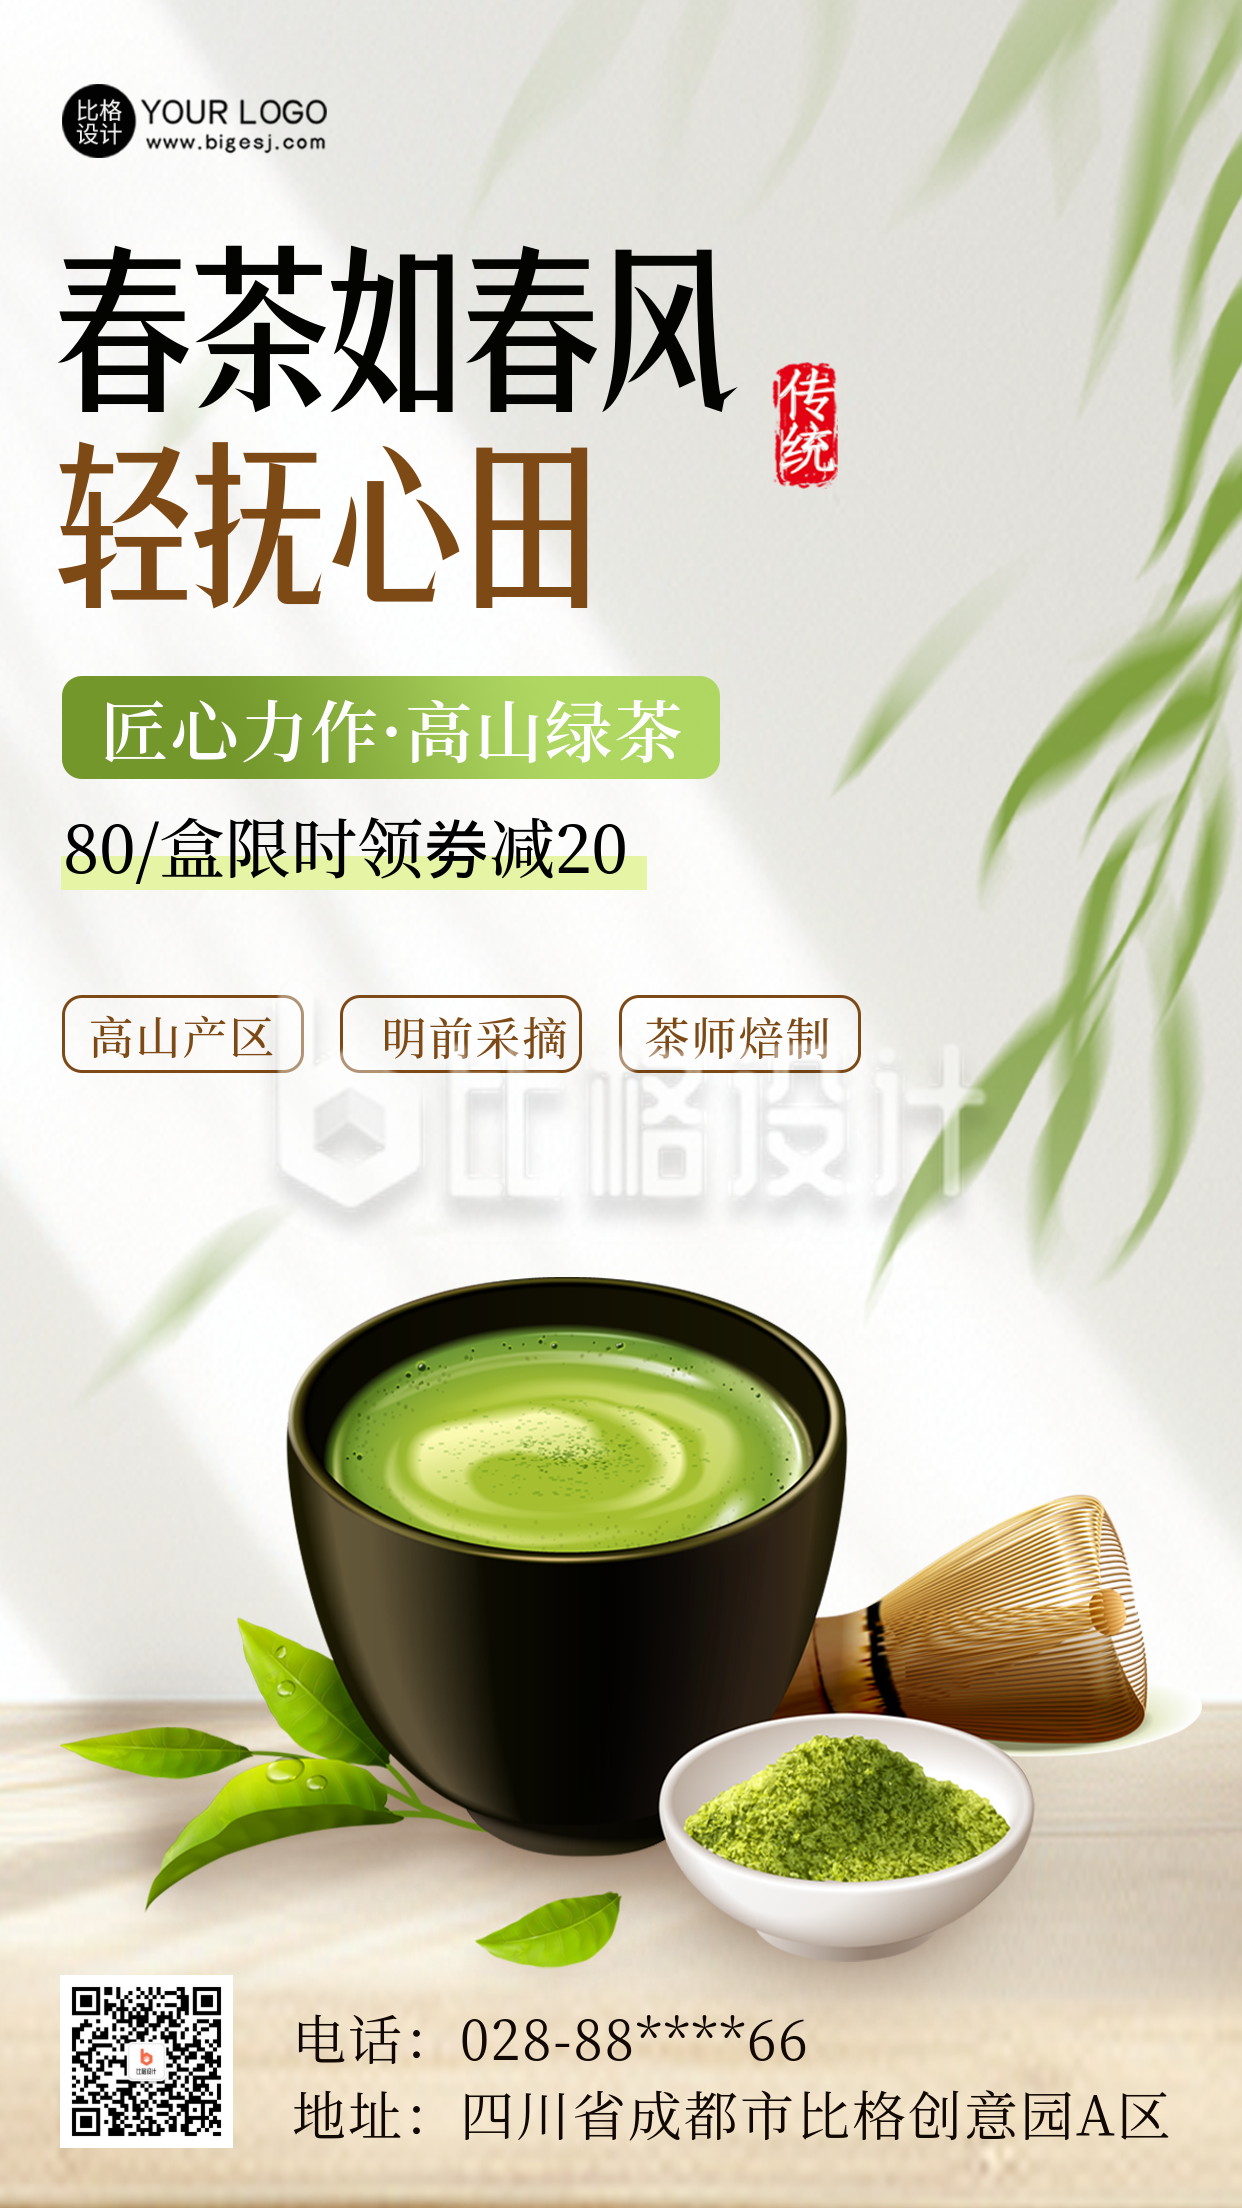 绿茶优惠促销活动海报